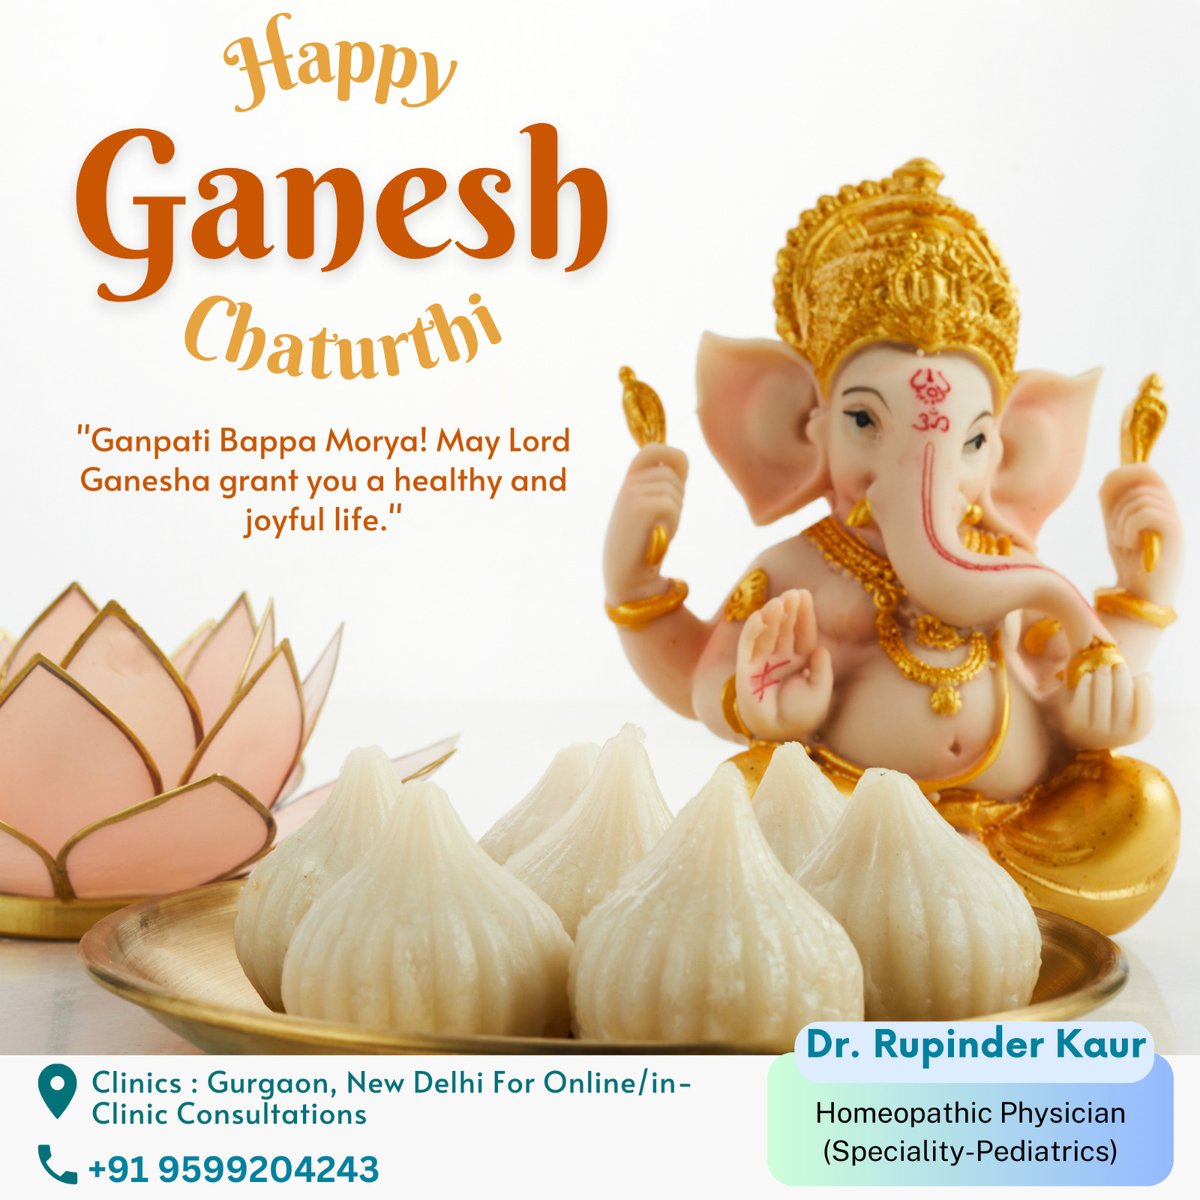 'Happy Ganesh Chaturthi📷📷''
'Embrace the spirit of unity and togetherness during this Ganesh Chaturthi.📷 '
#GaneshChaturthi 📷 #GanpatiBappaMorya 📷 #FestivalOfGanesh 📷 #LordGanesha 📷 #Ganeshotsav2023 📷 #DivineCelebrations 📷 #GaneshUtsav #GaneshChaturthiVibes 📷